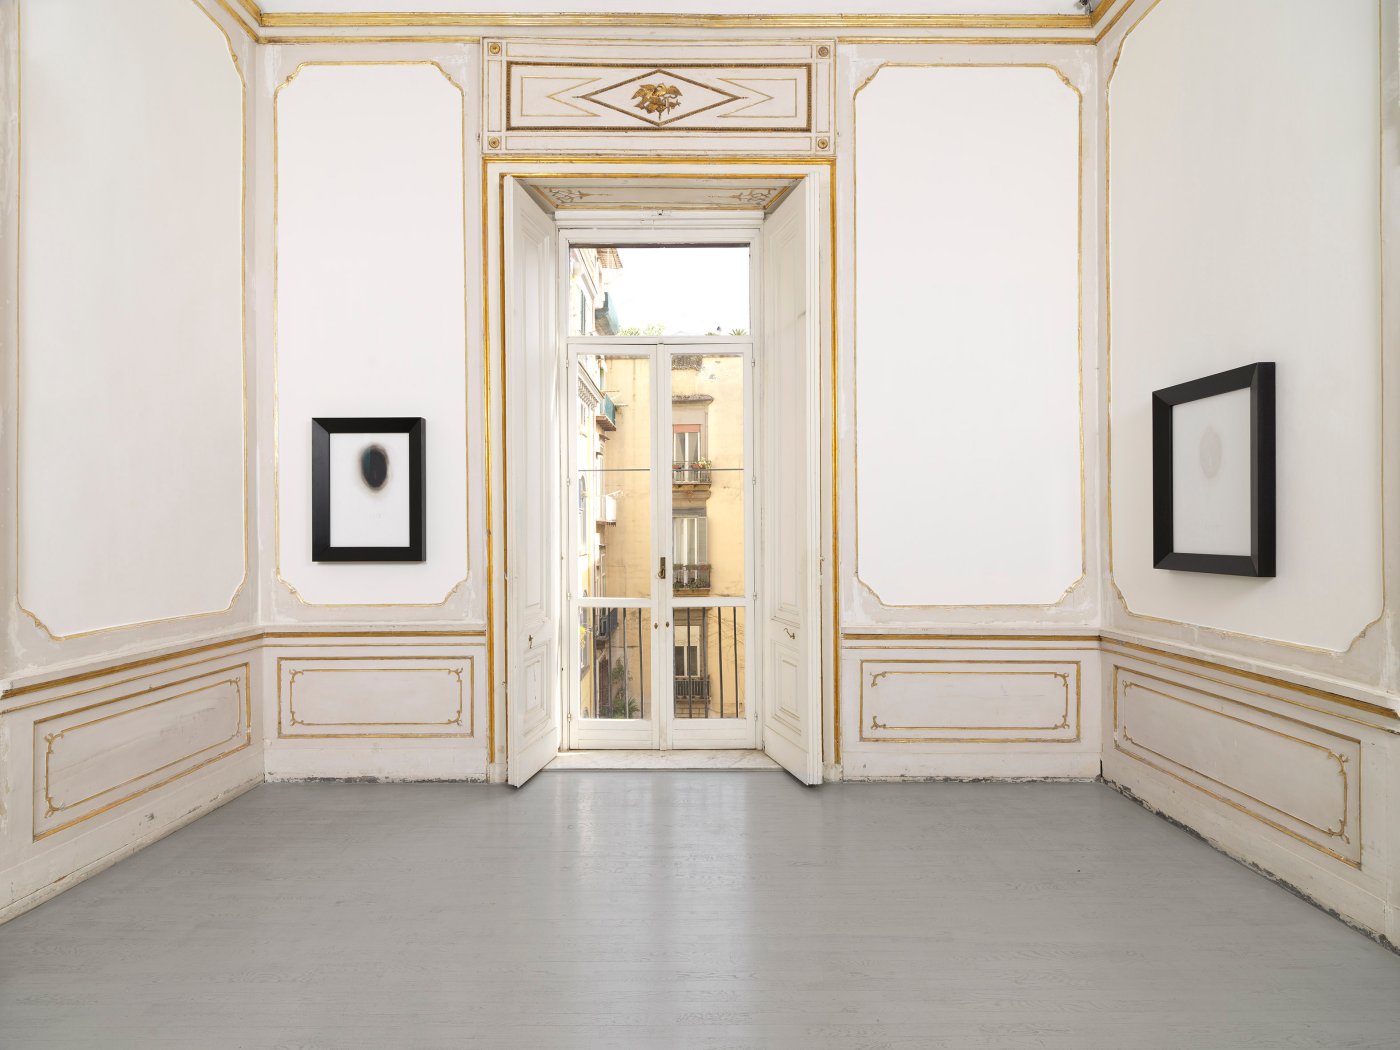 Installation image for Not Vital: Ad agosto ritornano le rondini, at Alfonso Artiaco